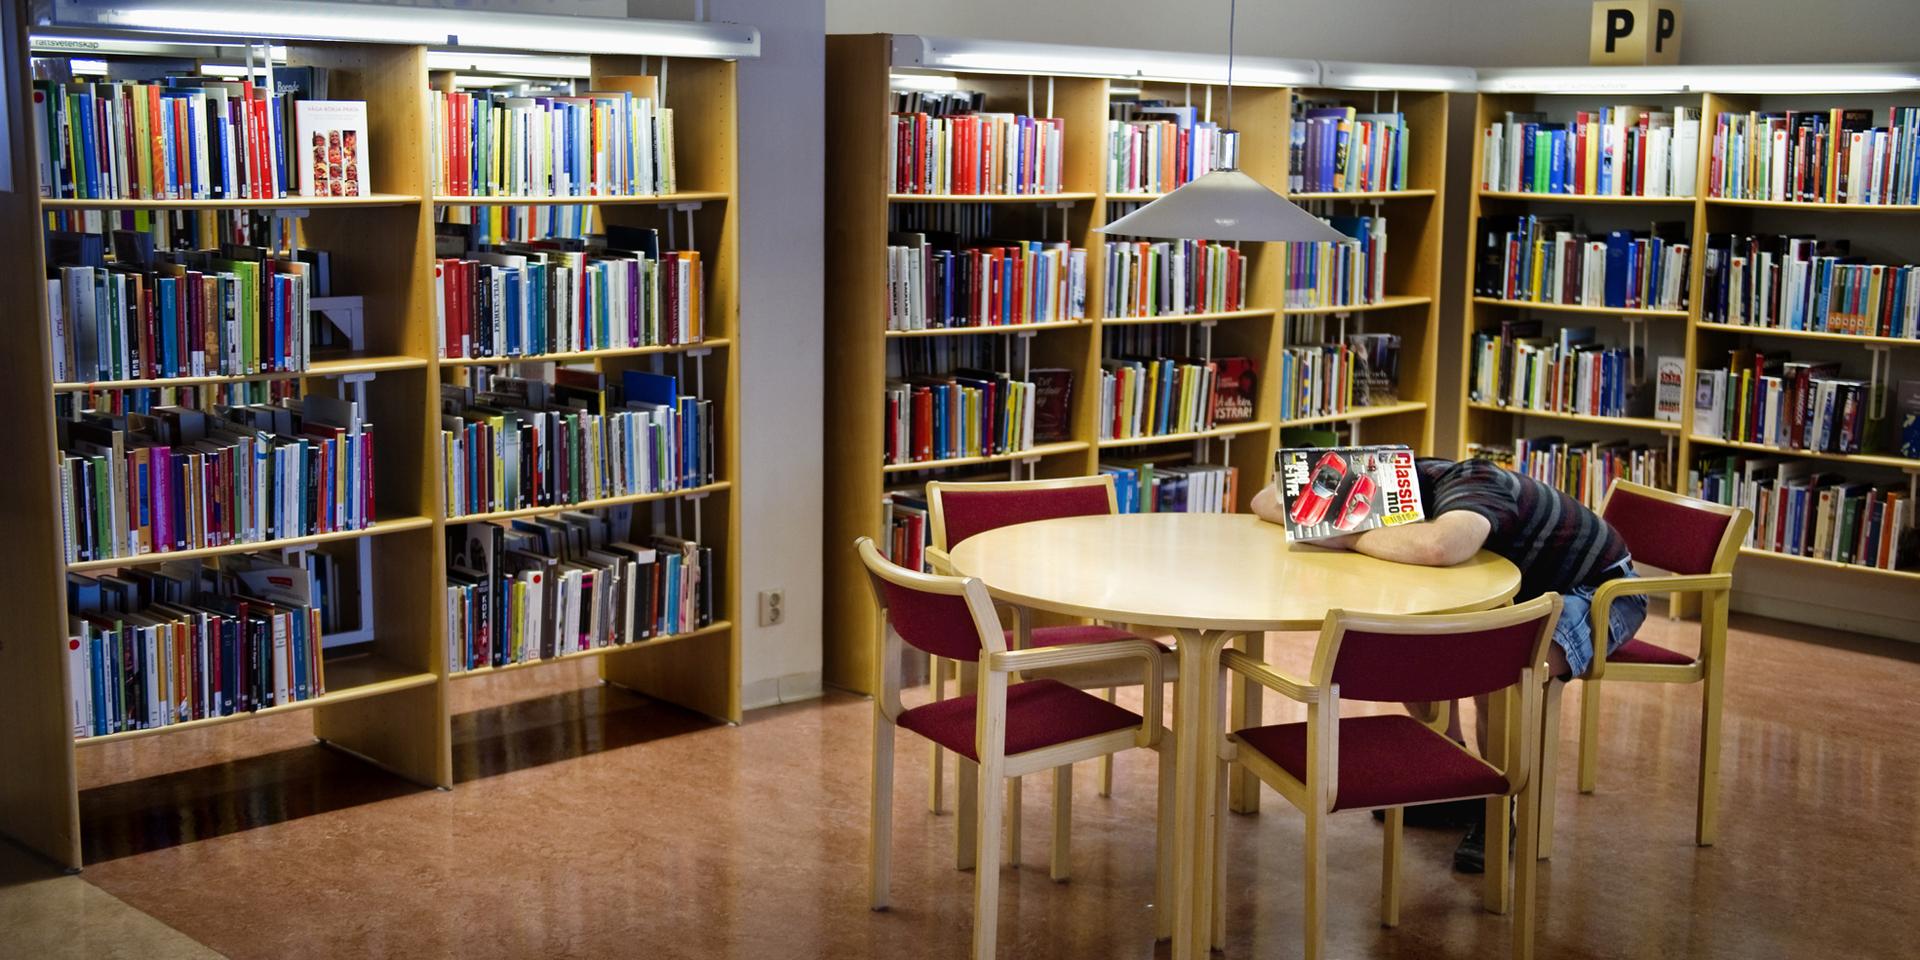 Uddevalla stadsbibliotek kommer att stänga tills vidare för att minska spridningen av coronaviruset. (Arkivfoto)